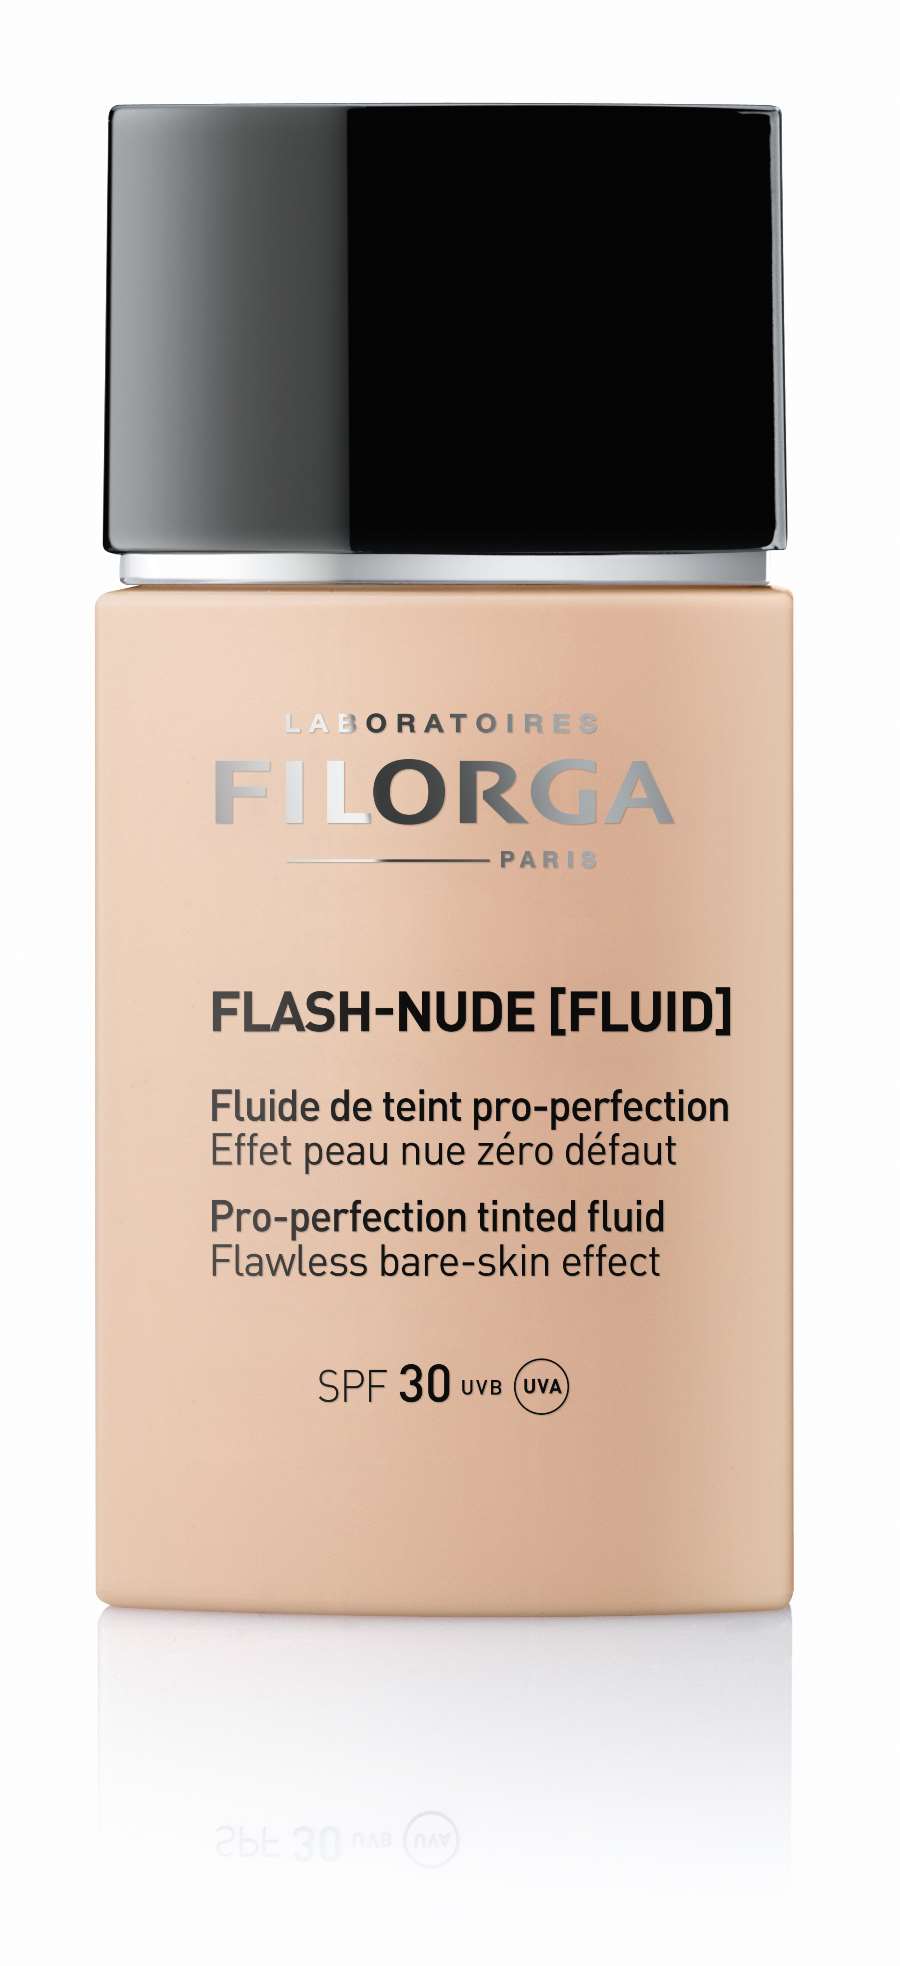 10. FLASH-NUDE-FLUID Filorga